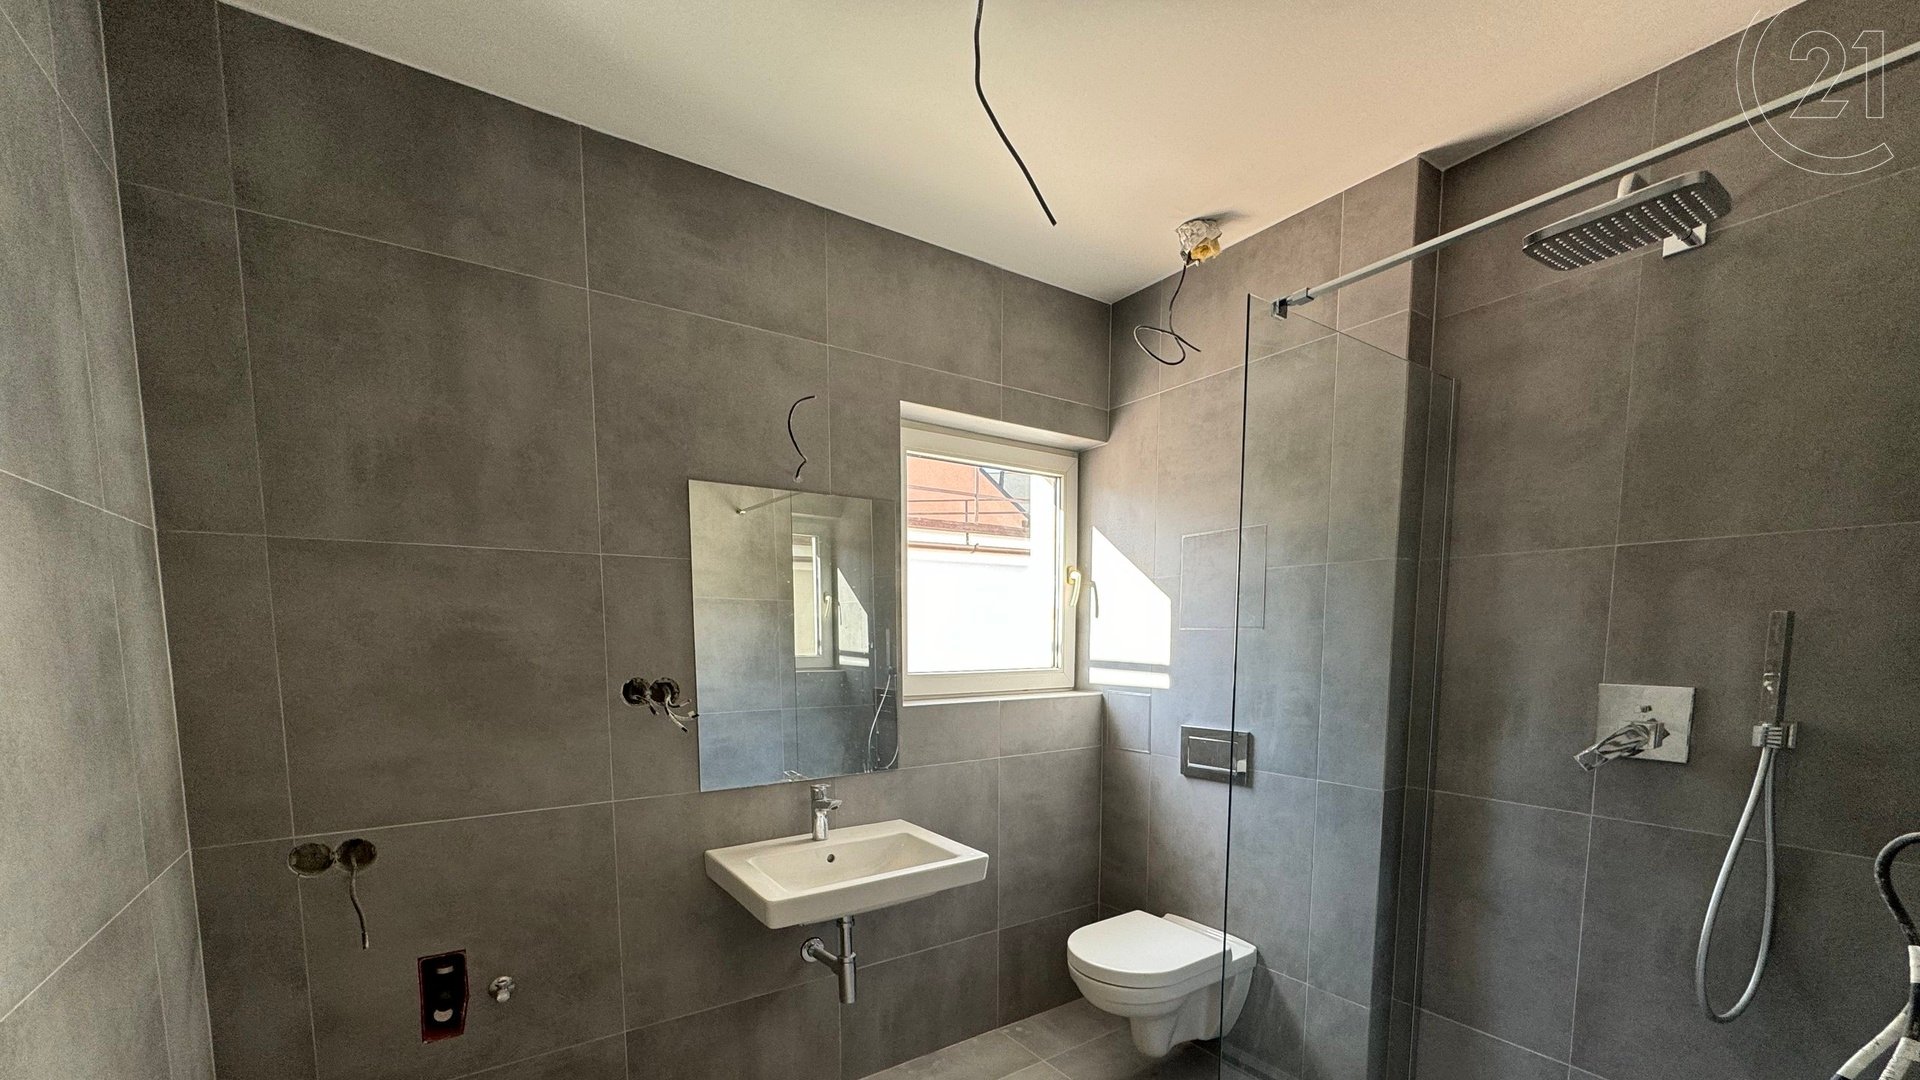 Byt 2+kk se dvěma koupelnami a WC, samostatným vchodem a sklepem, projekt Žalanského, Praha 6 - Řepy